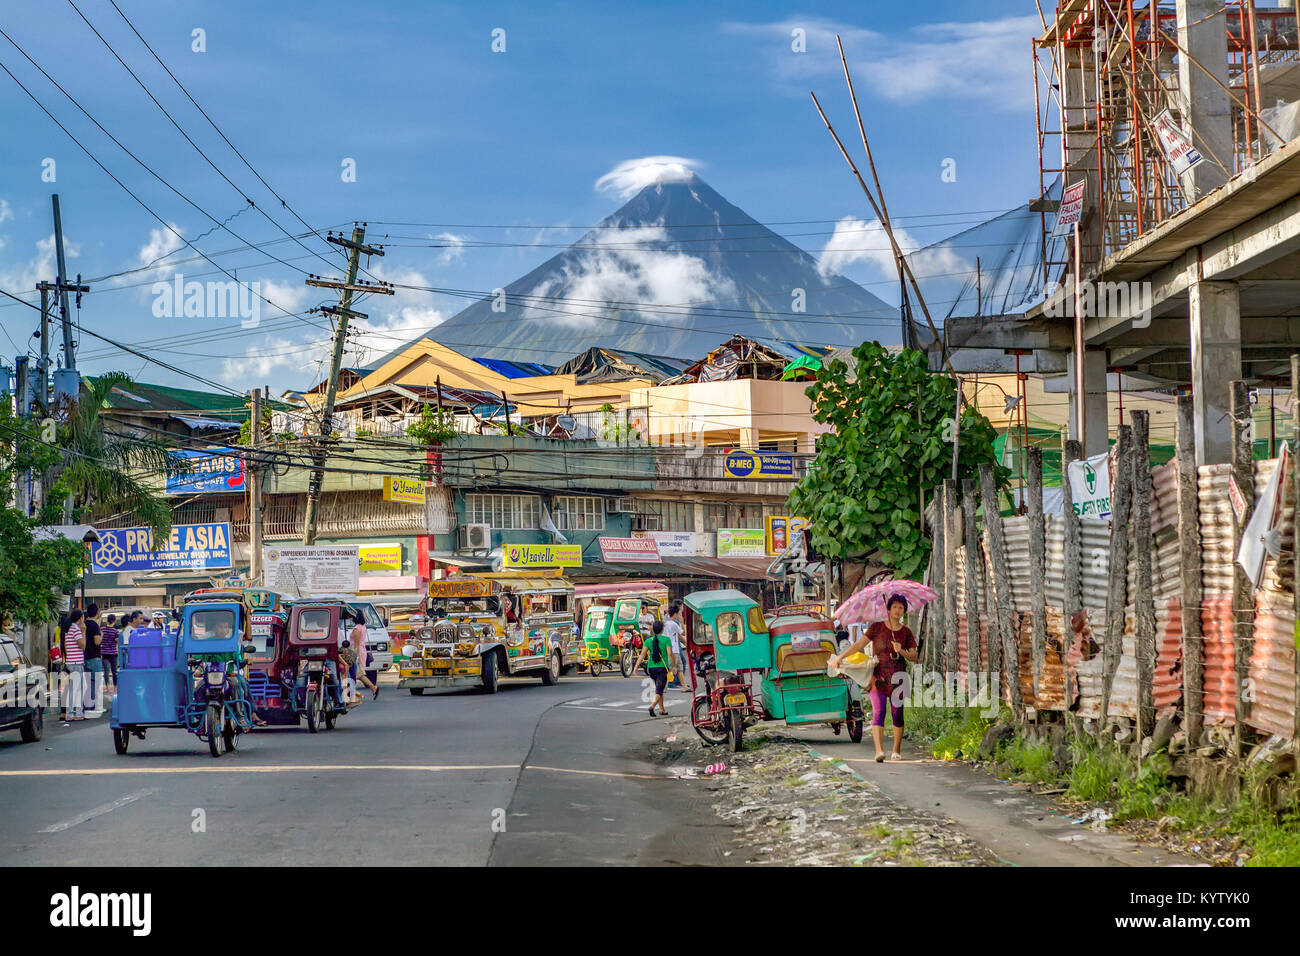 Legazpi è una città che vive sotto il vulcano'. La vita va avanti come al solito sotto la costante minaccia di eruzione dal molto attivo monte Vulcano Mayon. Foto Stock